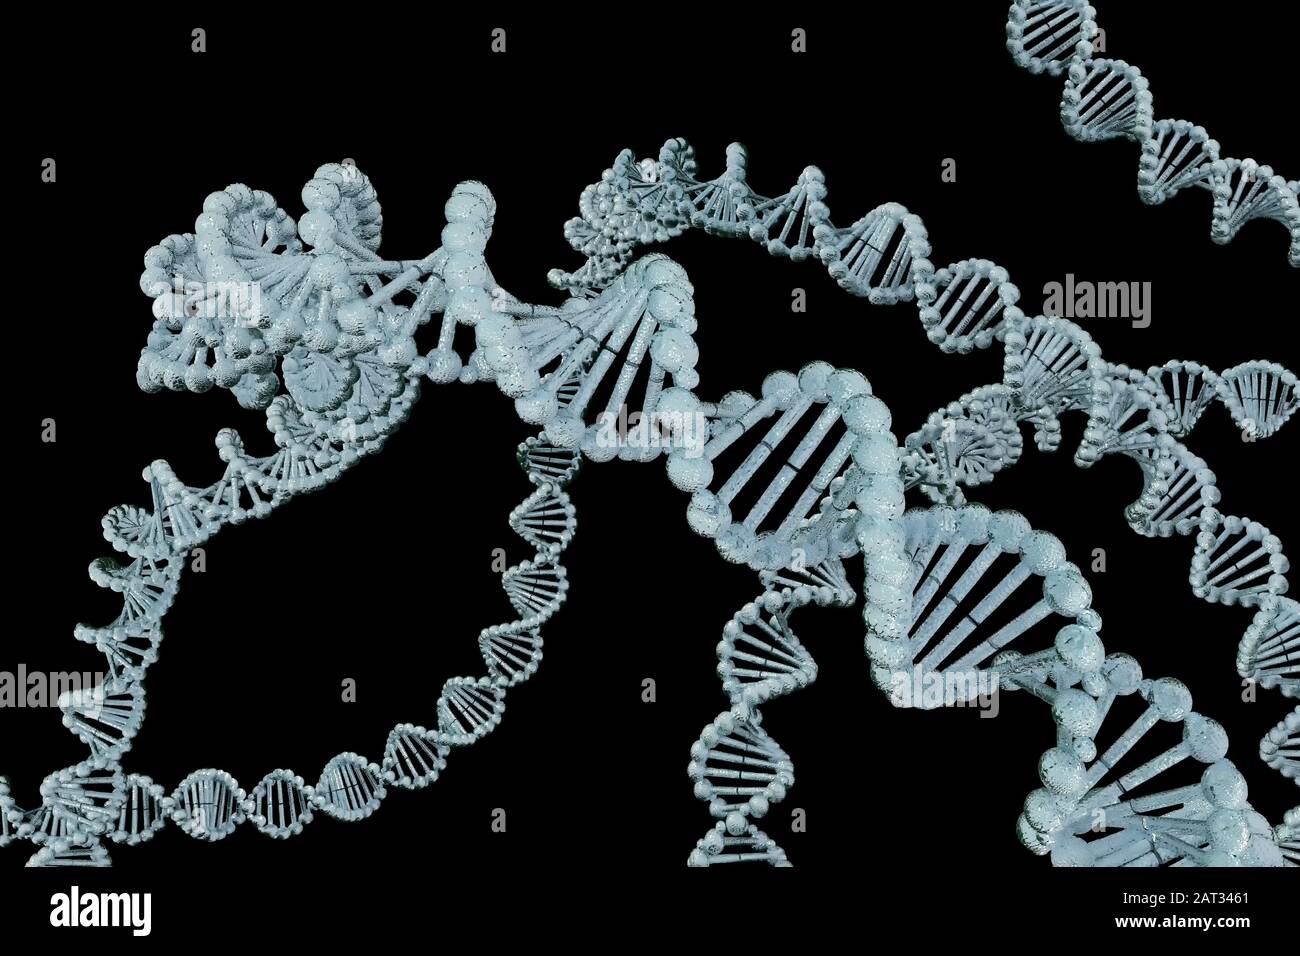 Rendu tridimensionnel de la structure de l'ADN (acide désoxyribonucléique), illustration tridimensionnelle. Banque D'Images